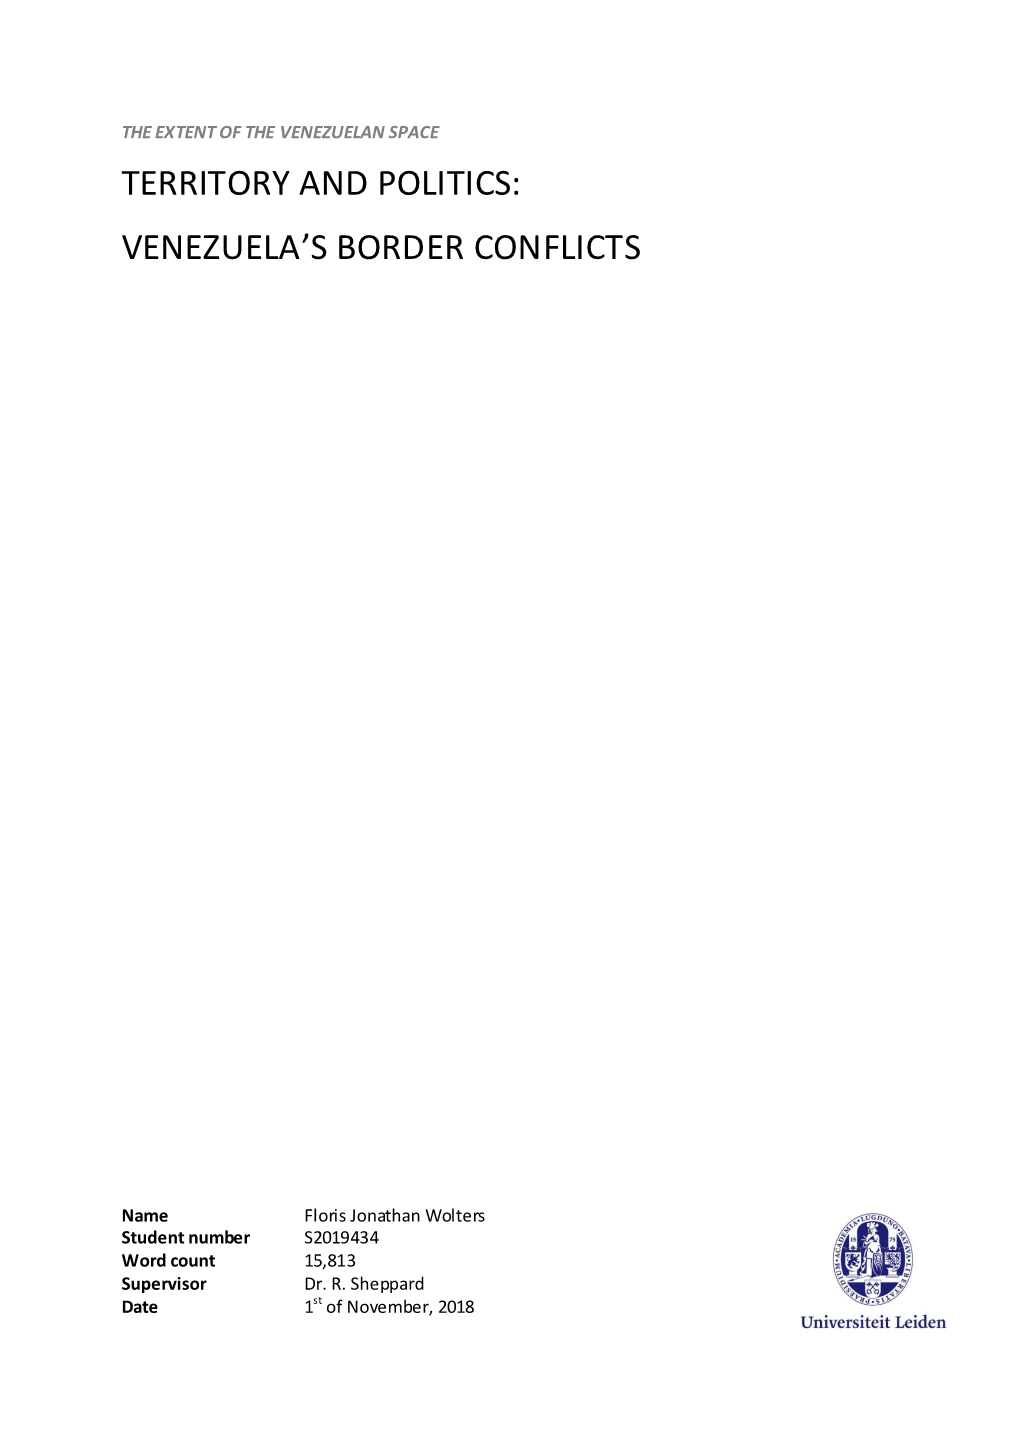 Venezuela's Border Conflicts